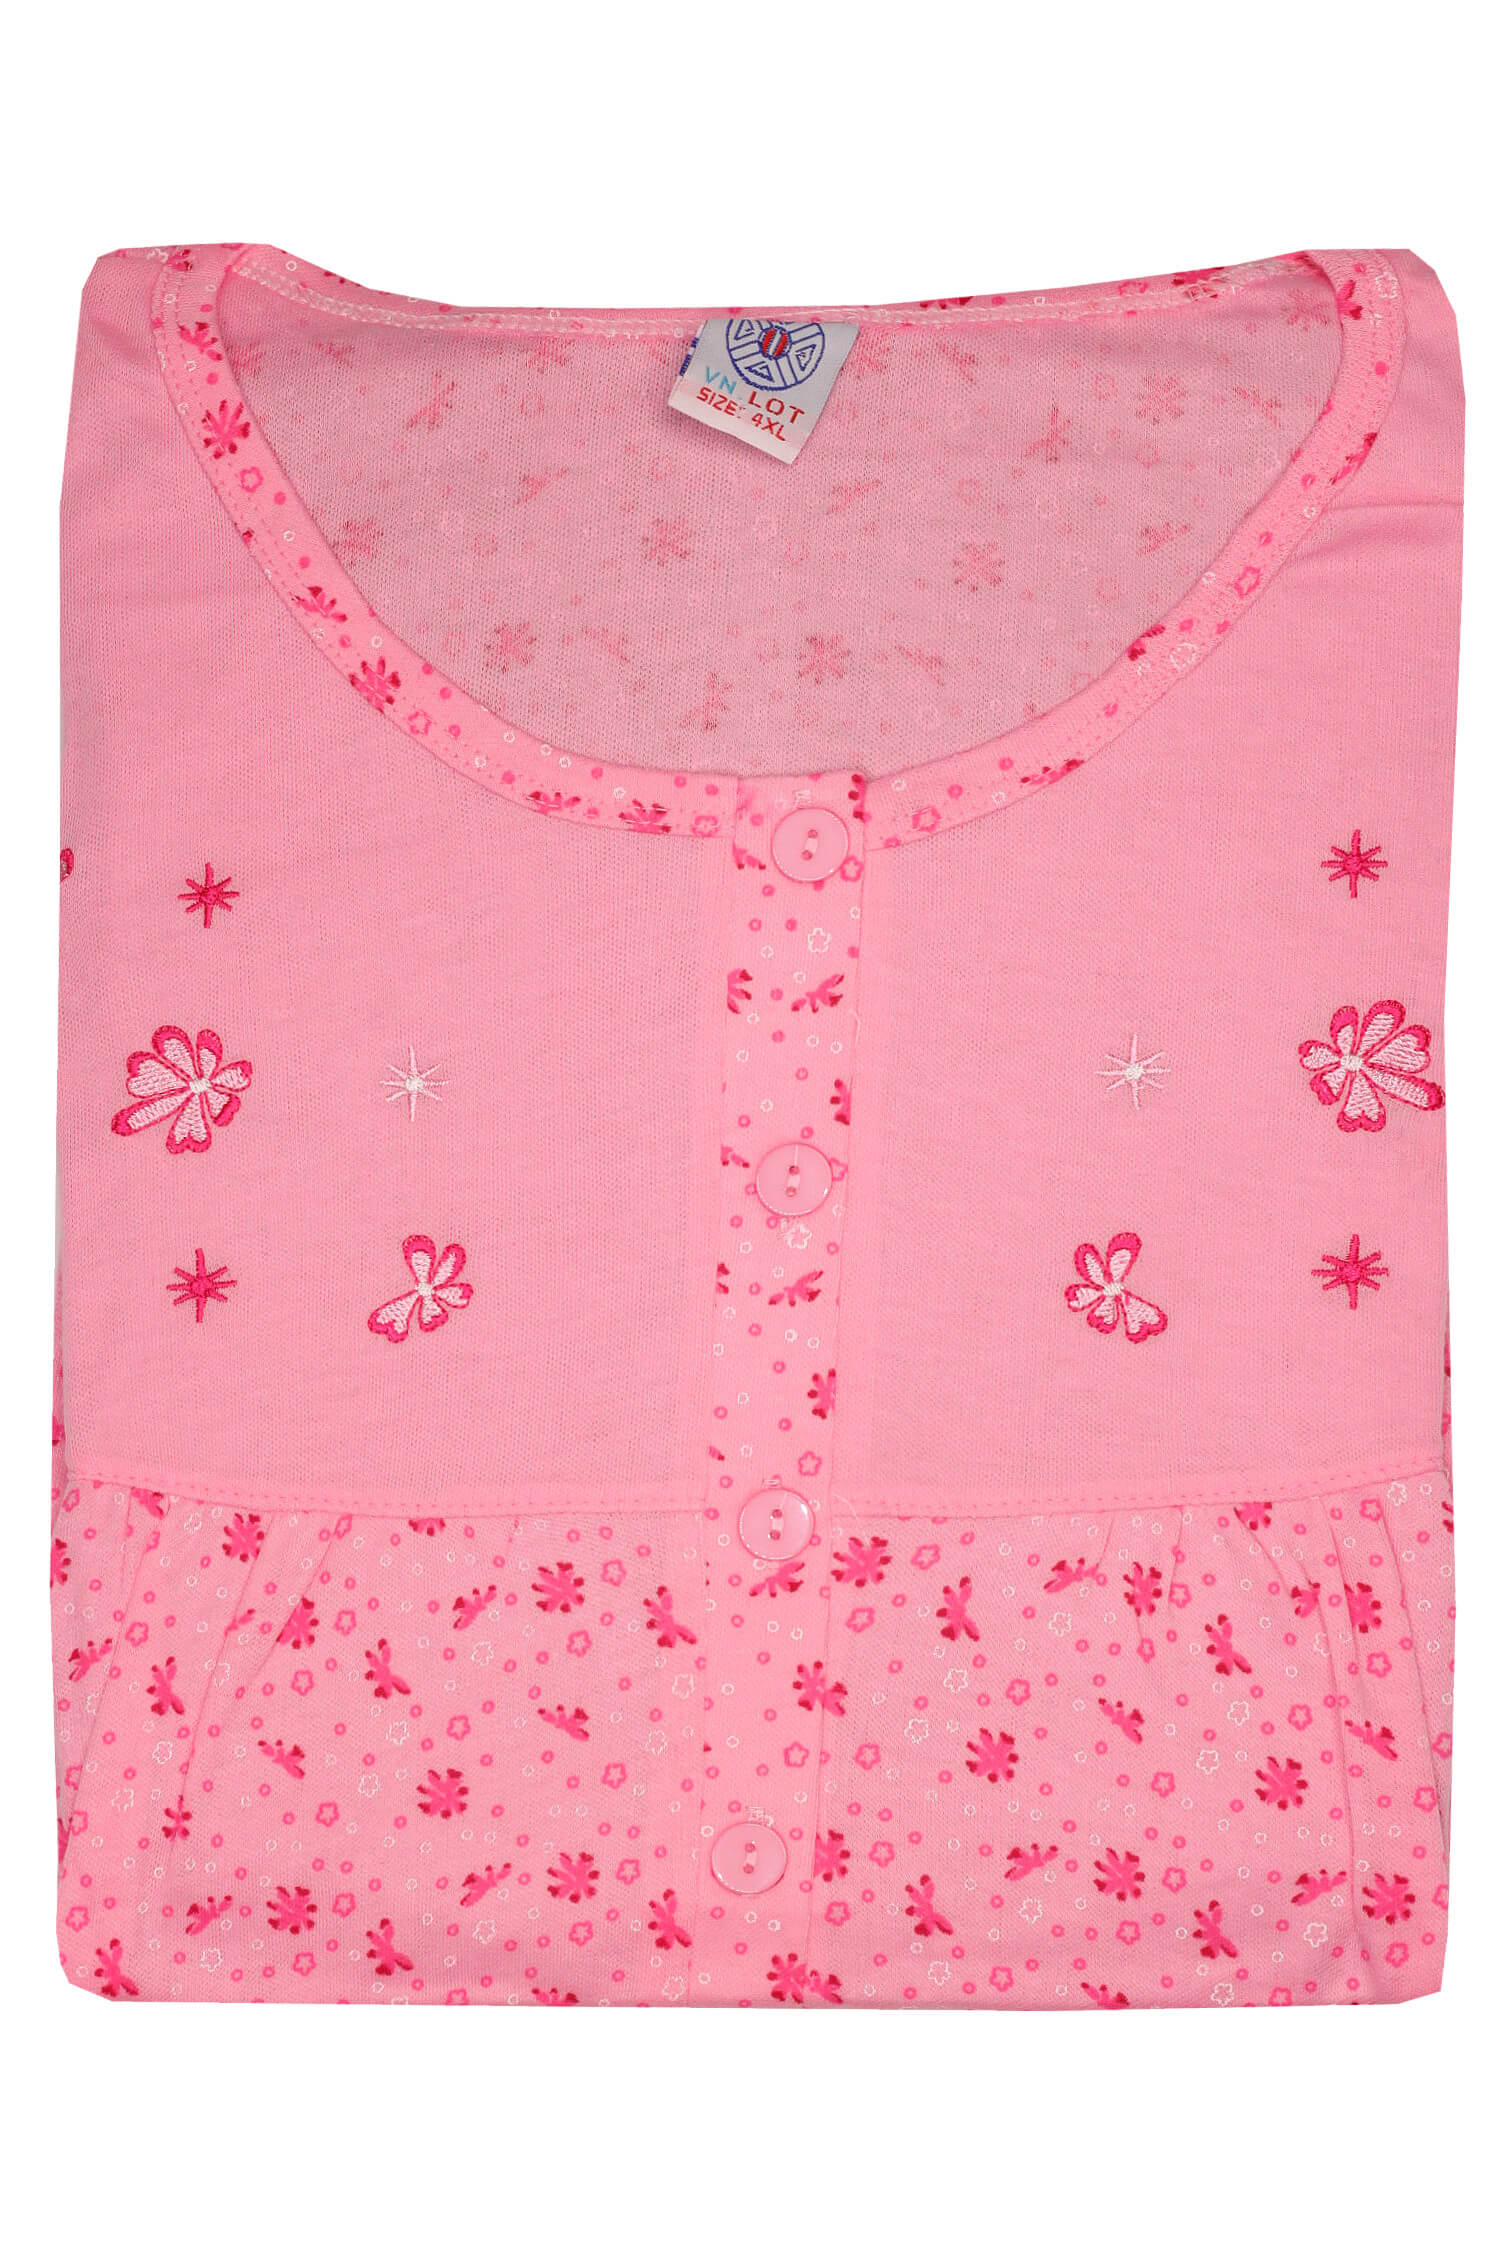 Maruška dámská noční košile V659/110 XL růžová